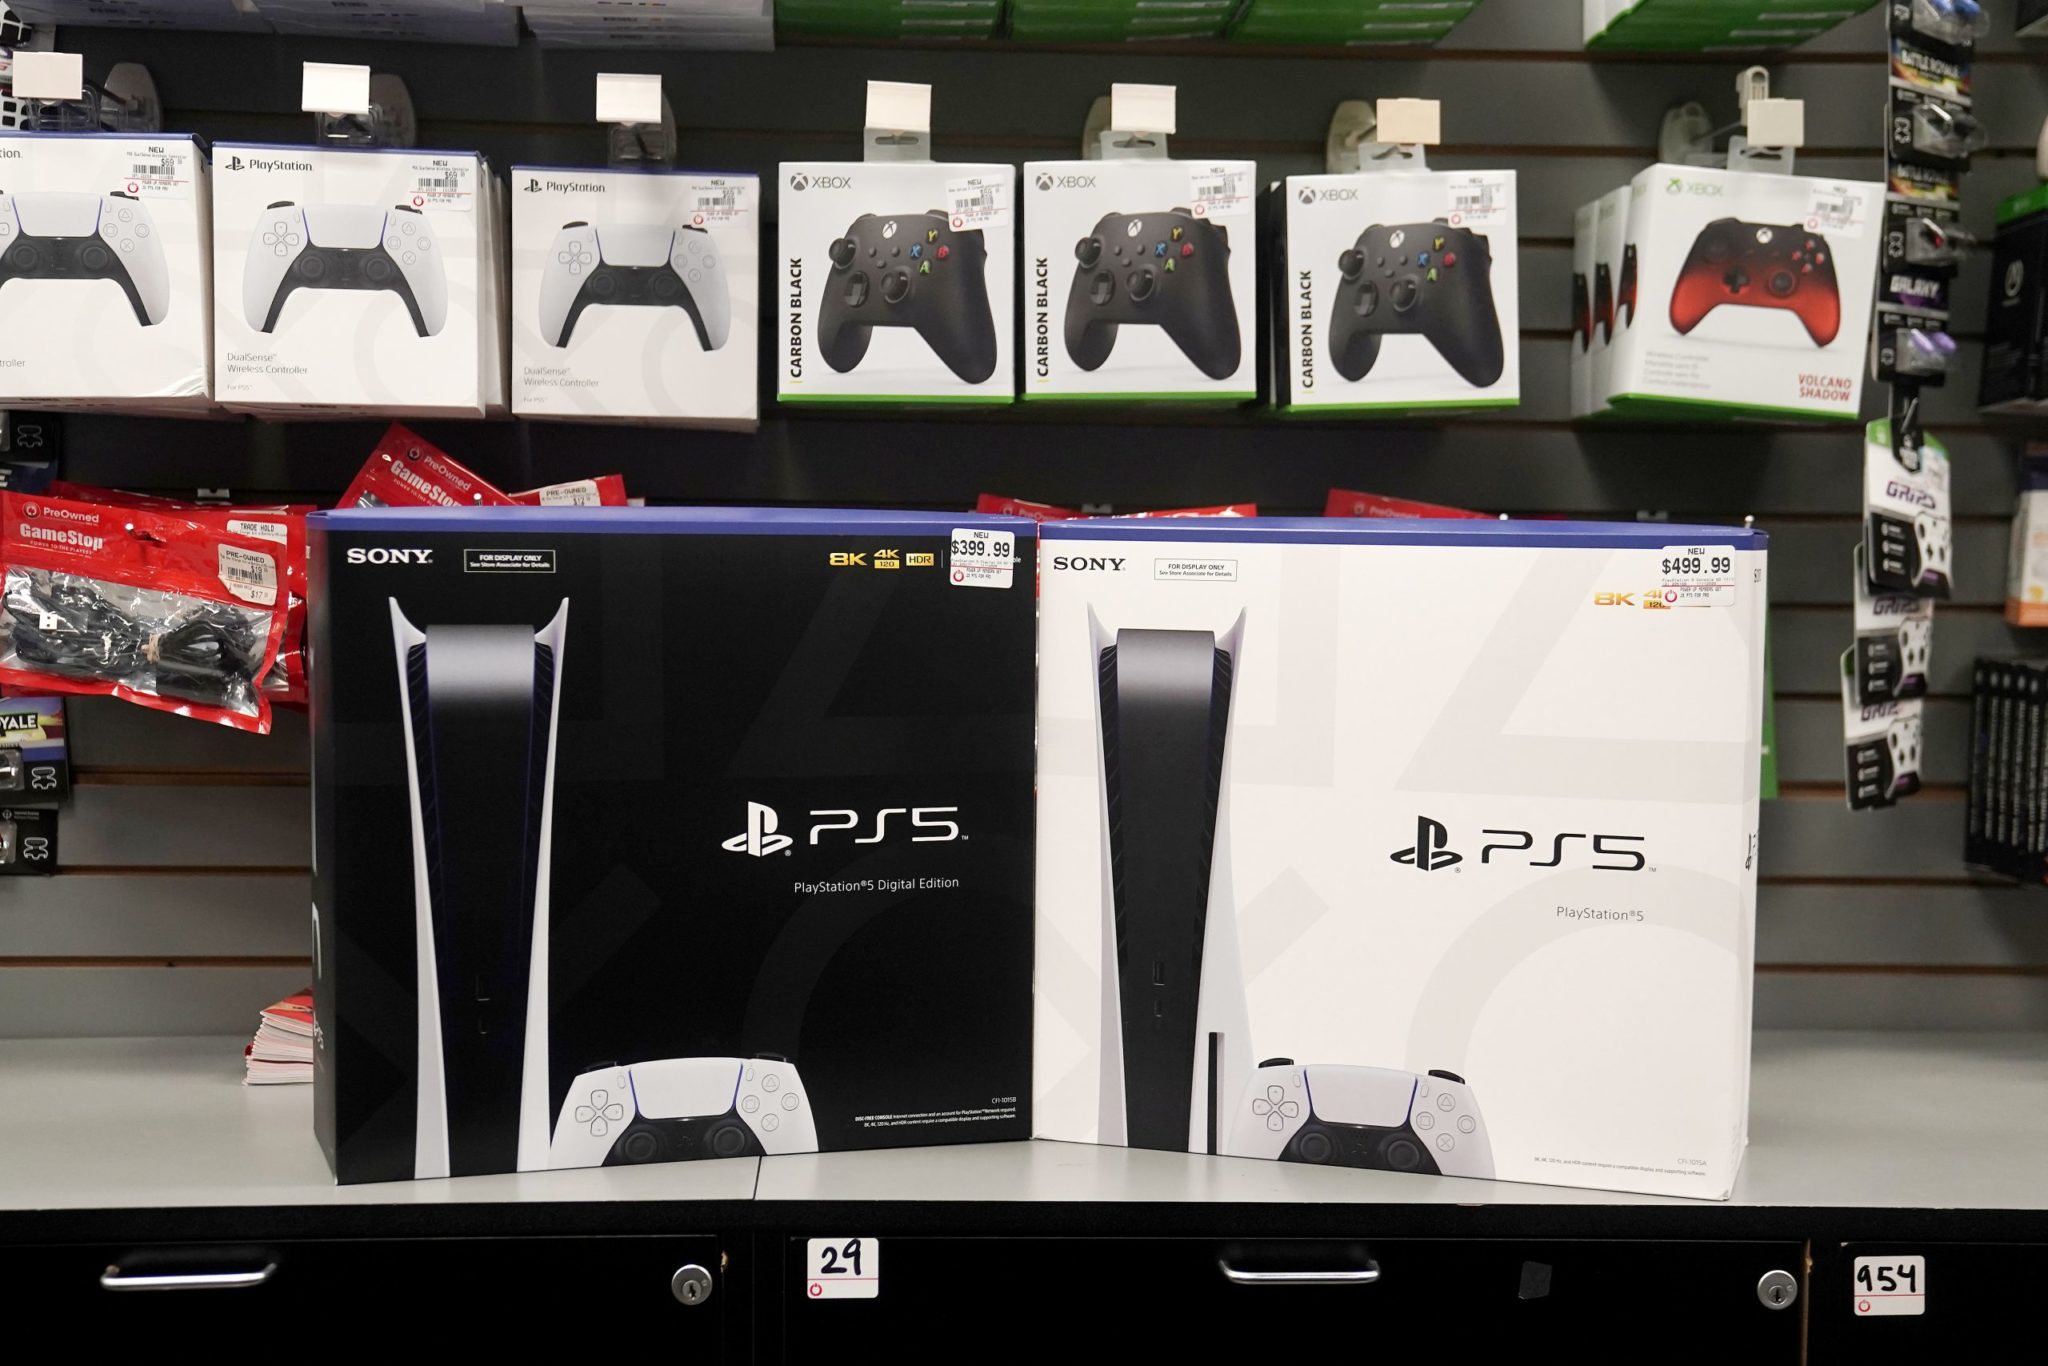 Conheça a nova PS Plus e entenda as mudanças no serviço da Sony